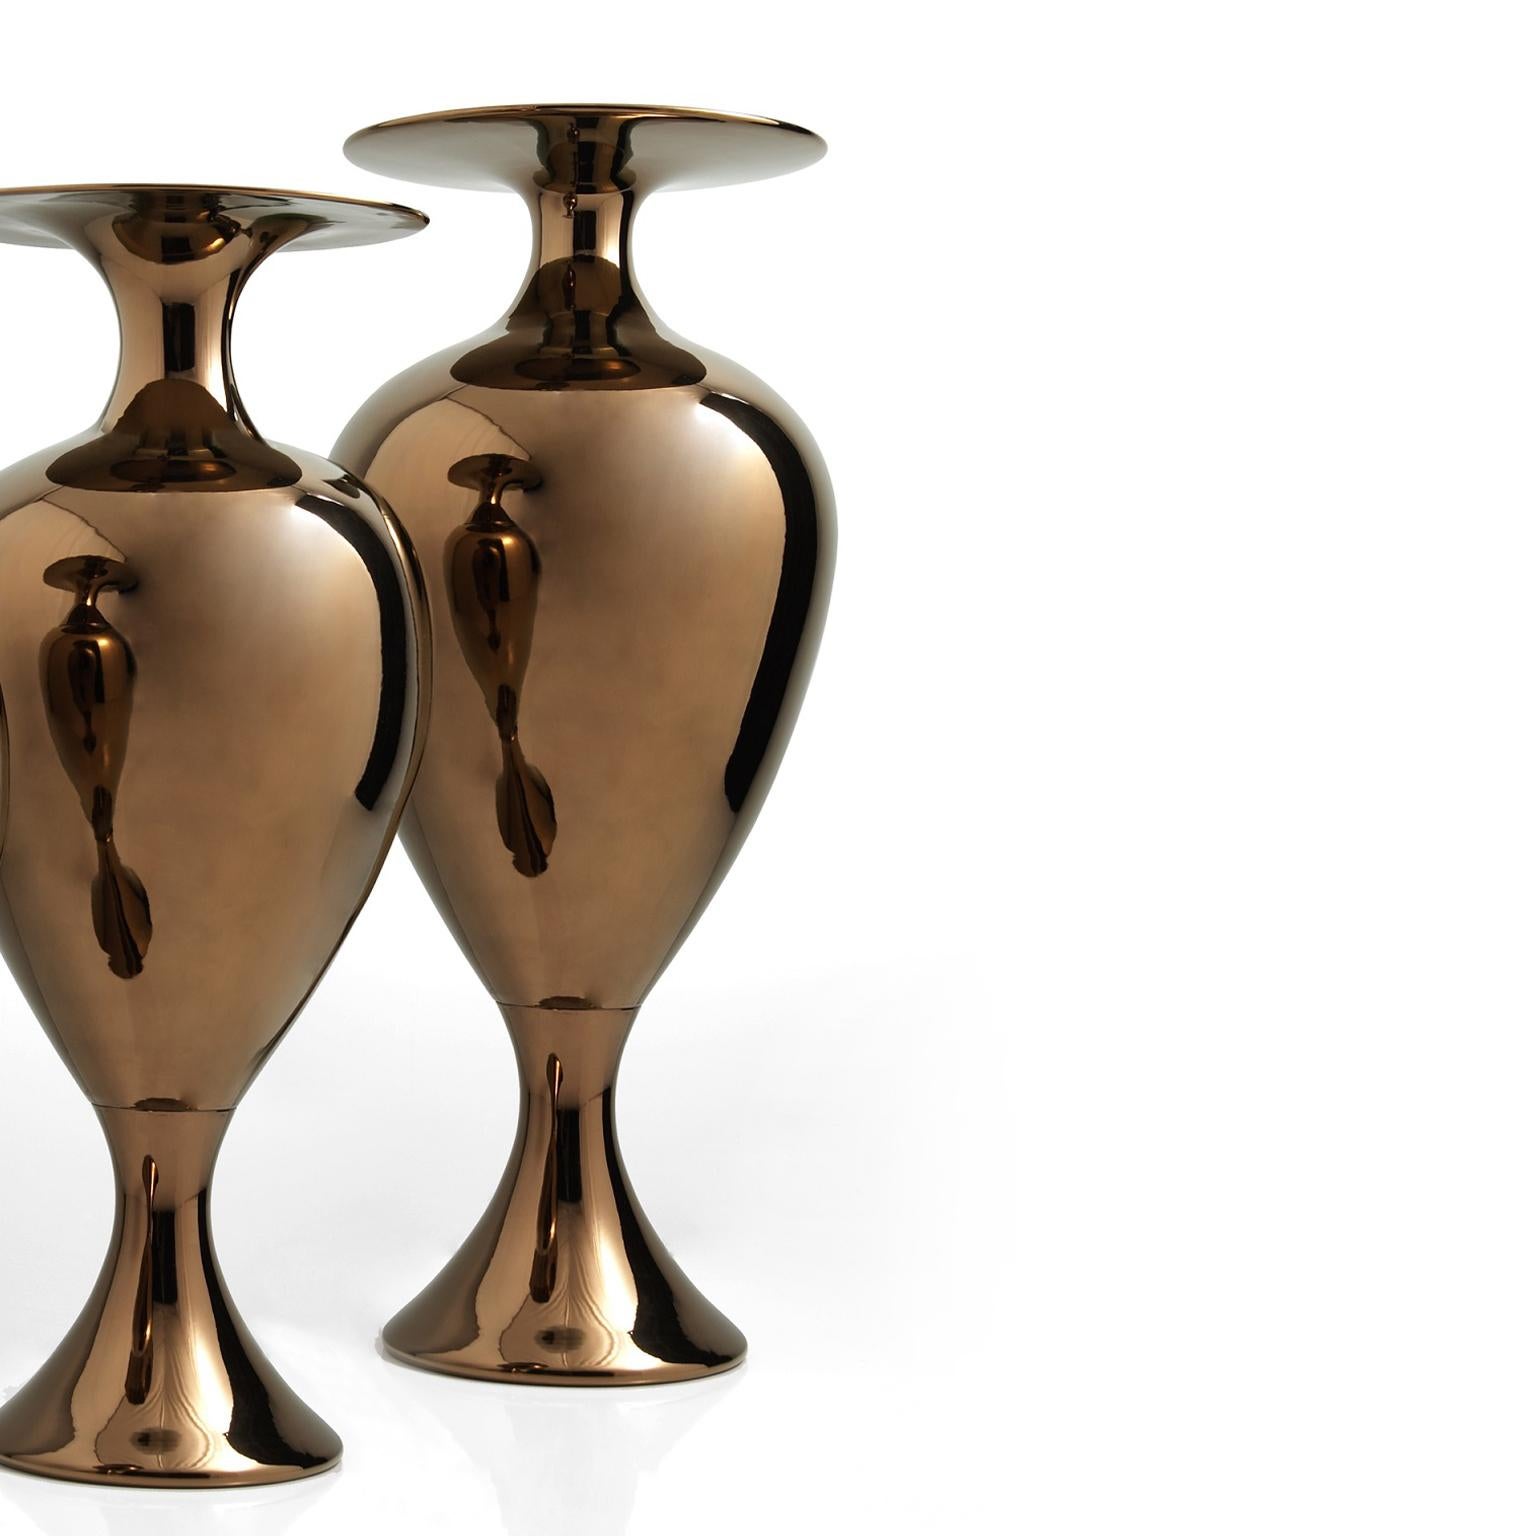 Ceramic vase handcrafted in bronze
CAMILLE - code VS006, measures: H. 120.0 cm., Dm. 45.0 cm.